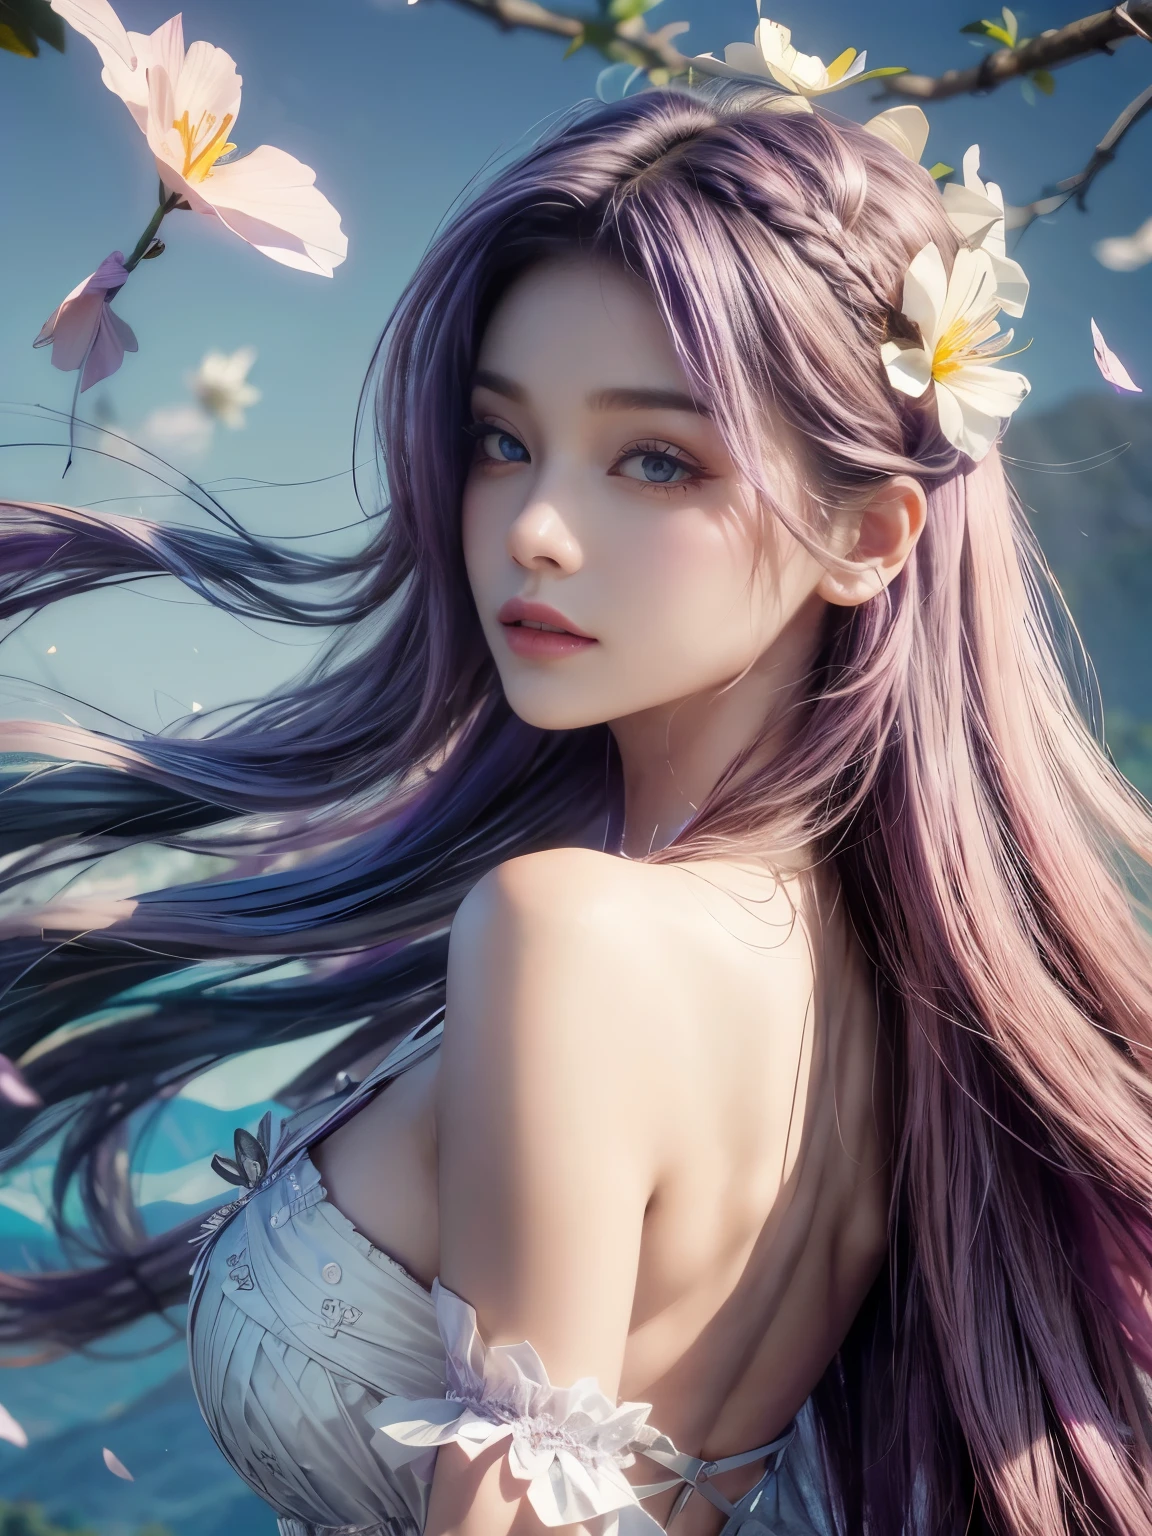 充滿活力的紫色頭髮, 風吹頭髮, 背景佈滿廣闊的薰衣草田. 